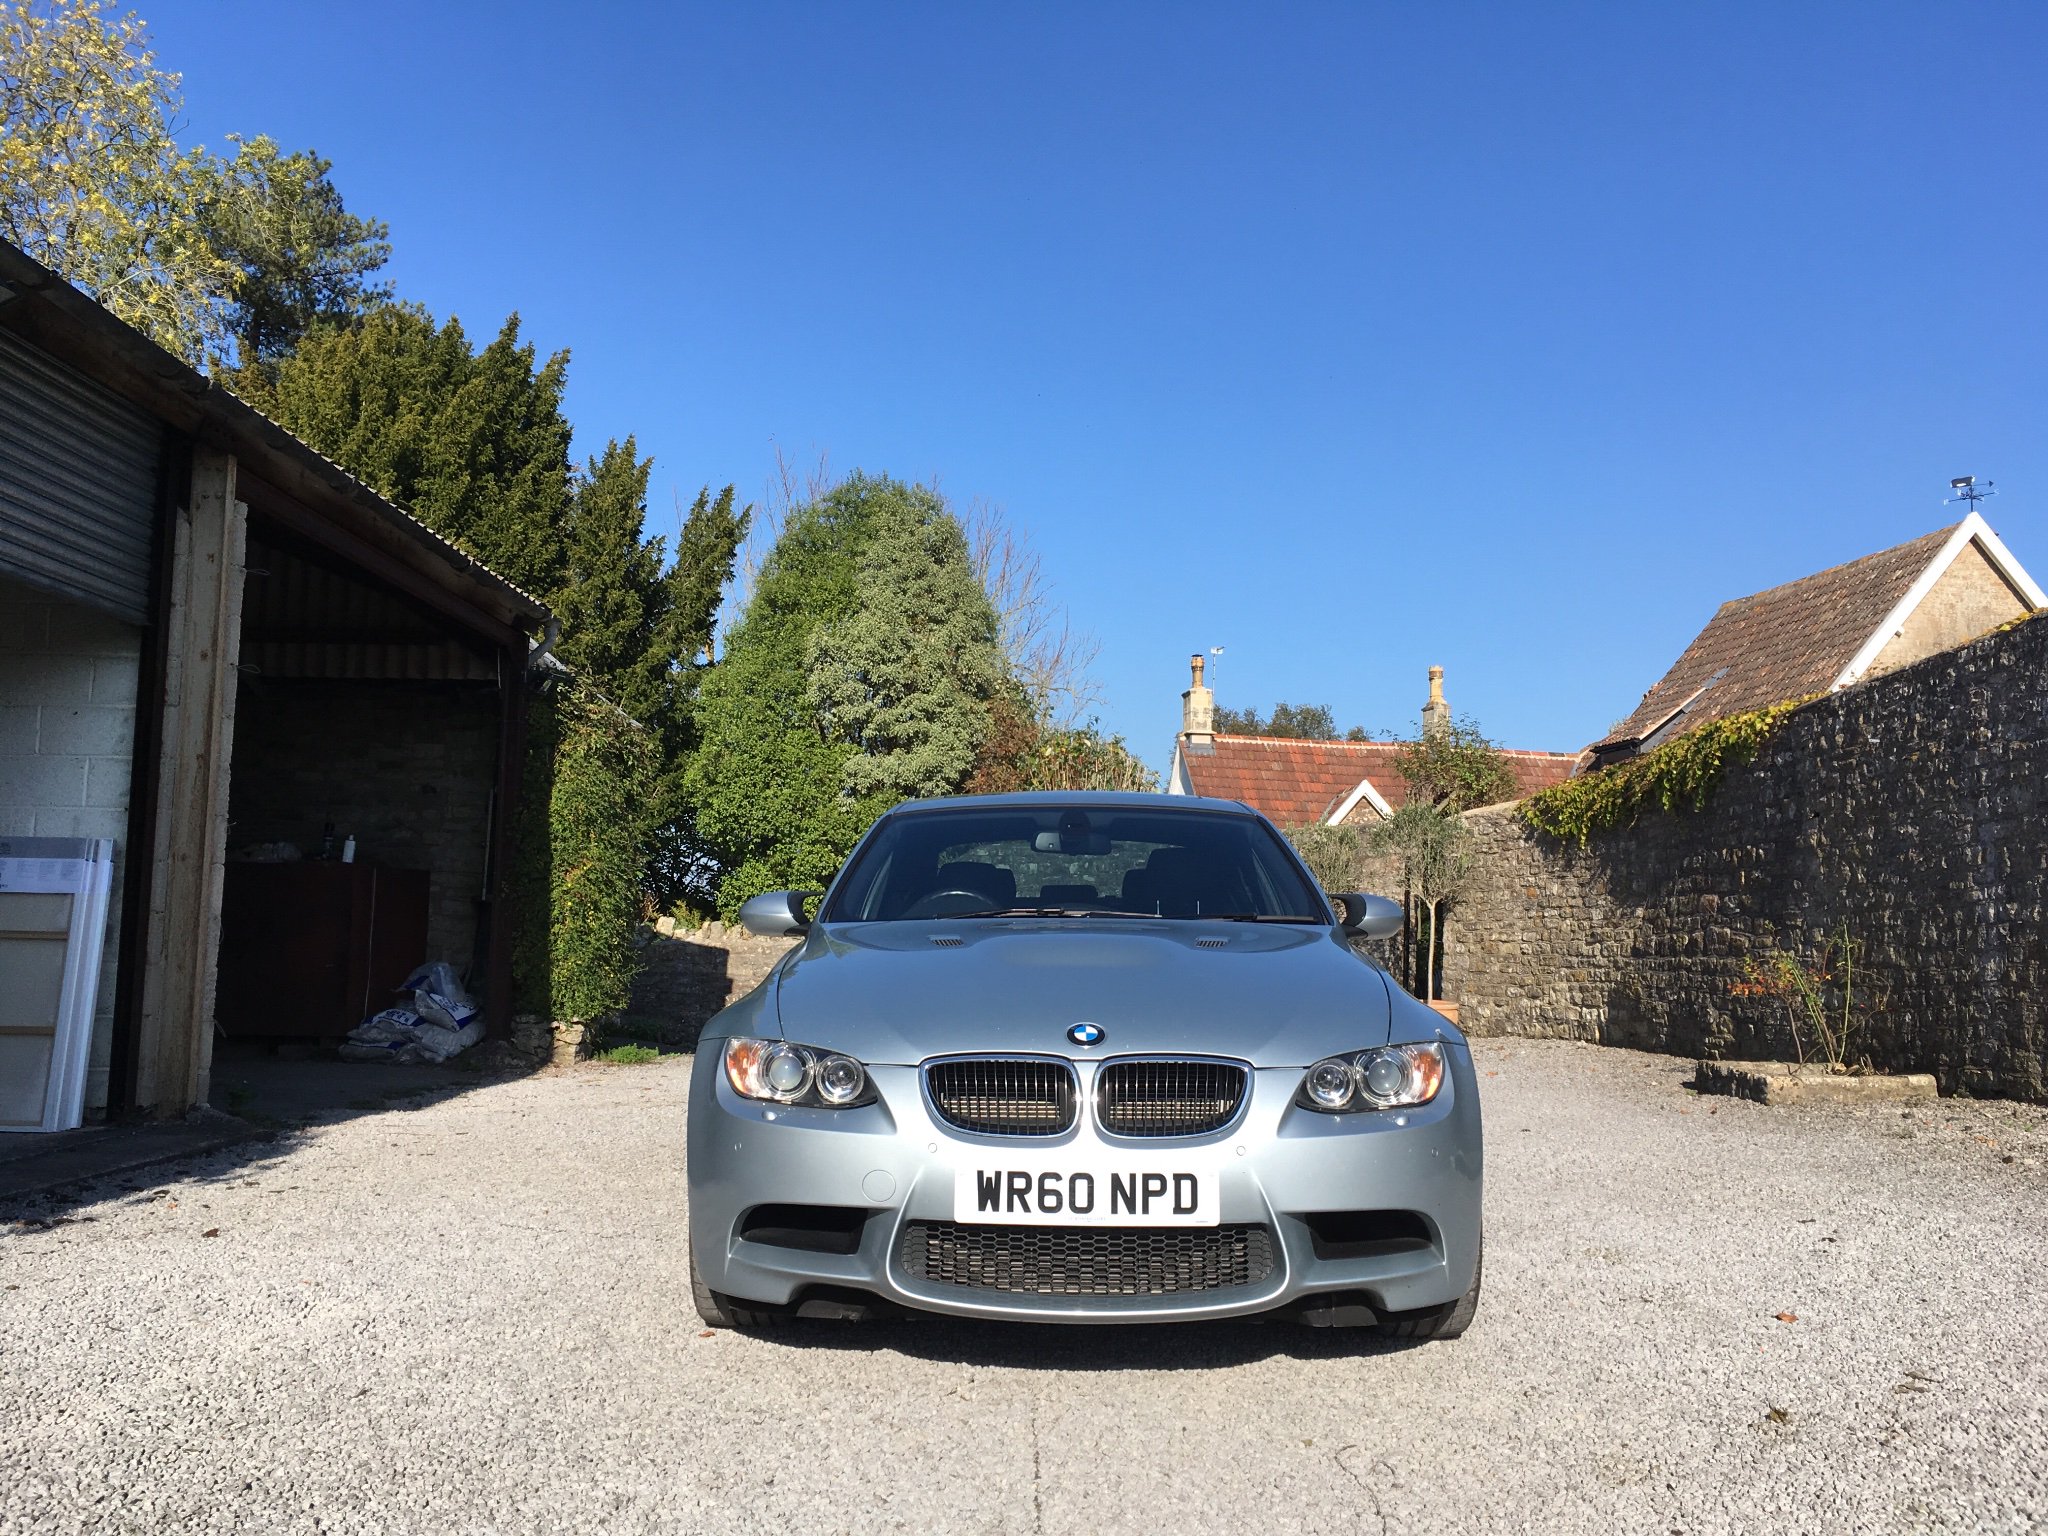 BMW E92 M3 - with BMW warranty